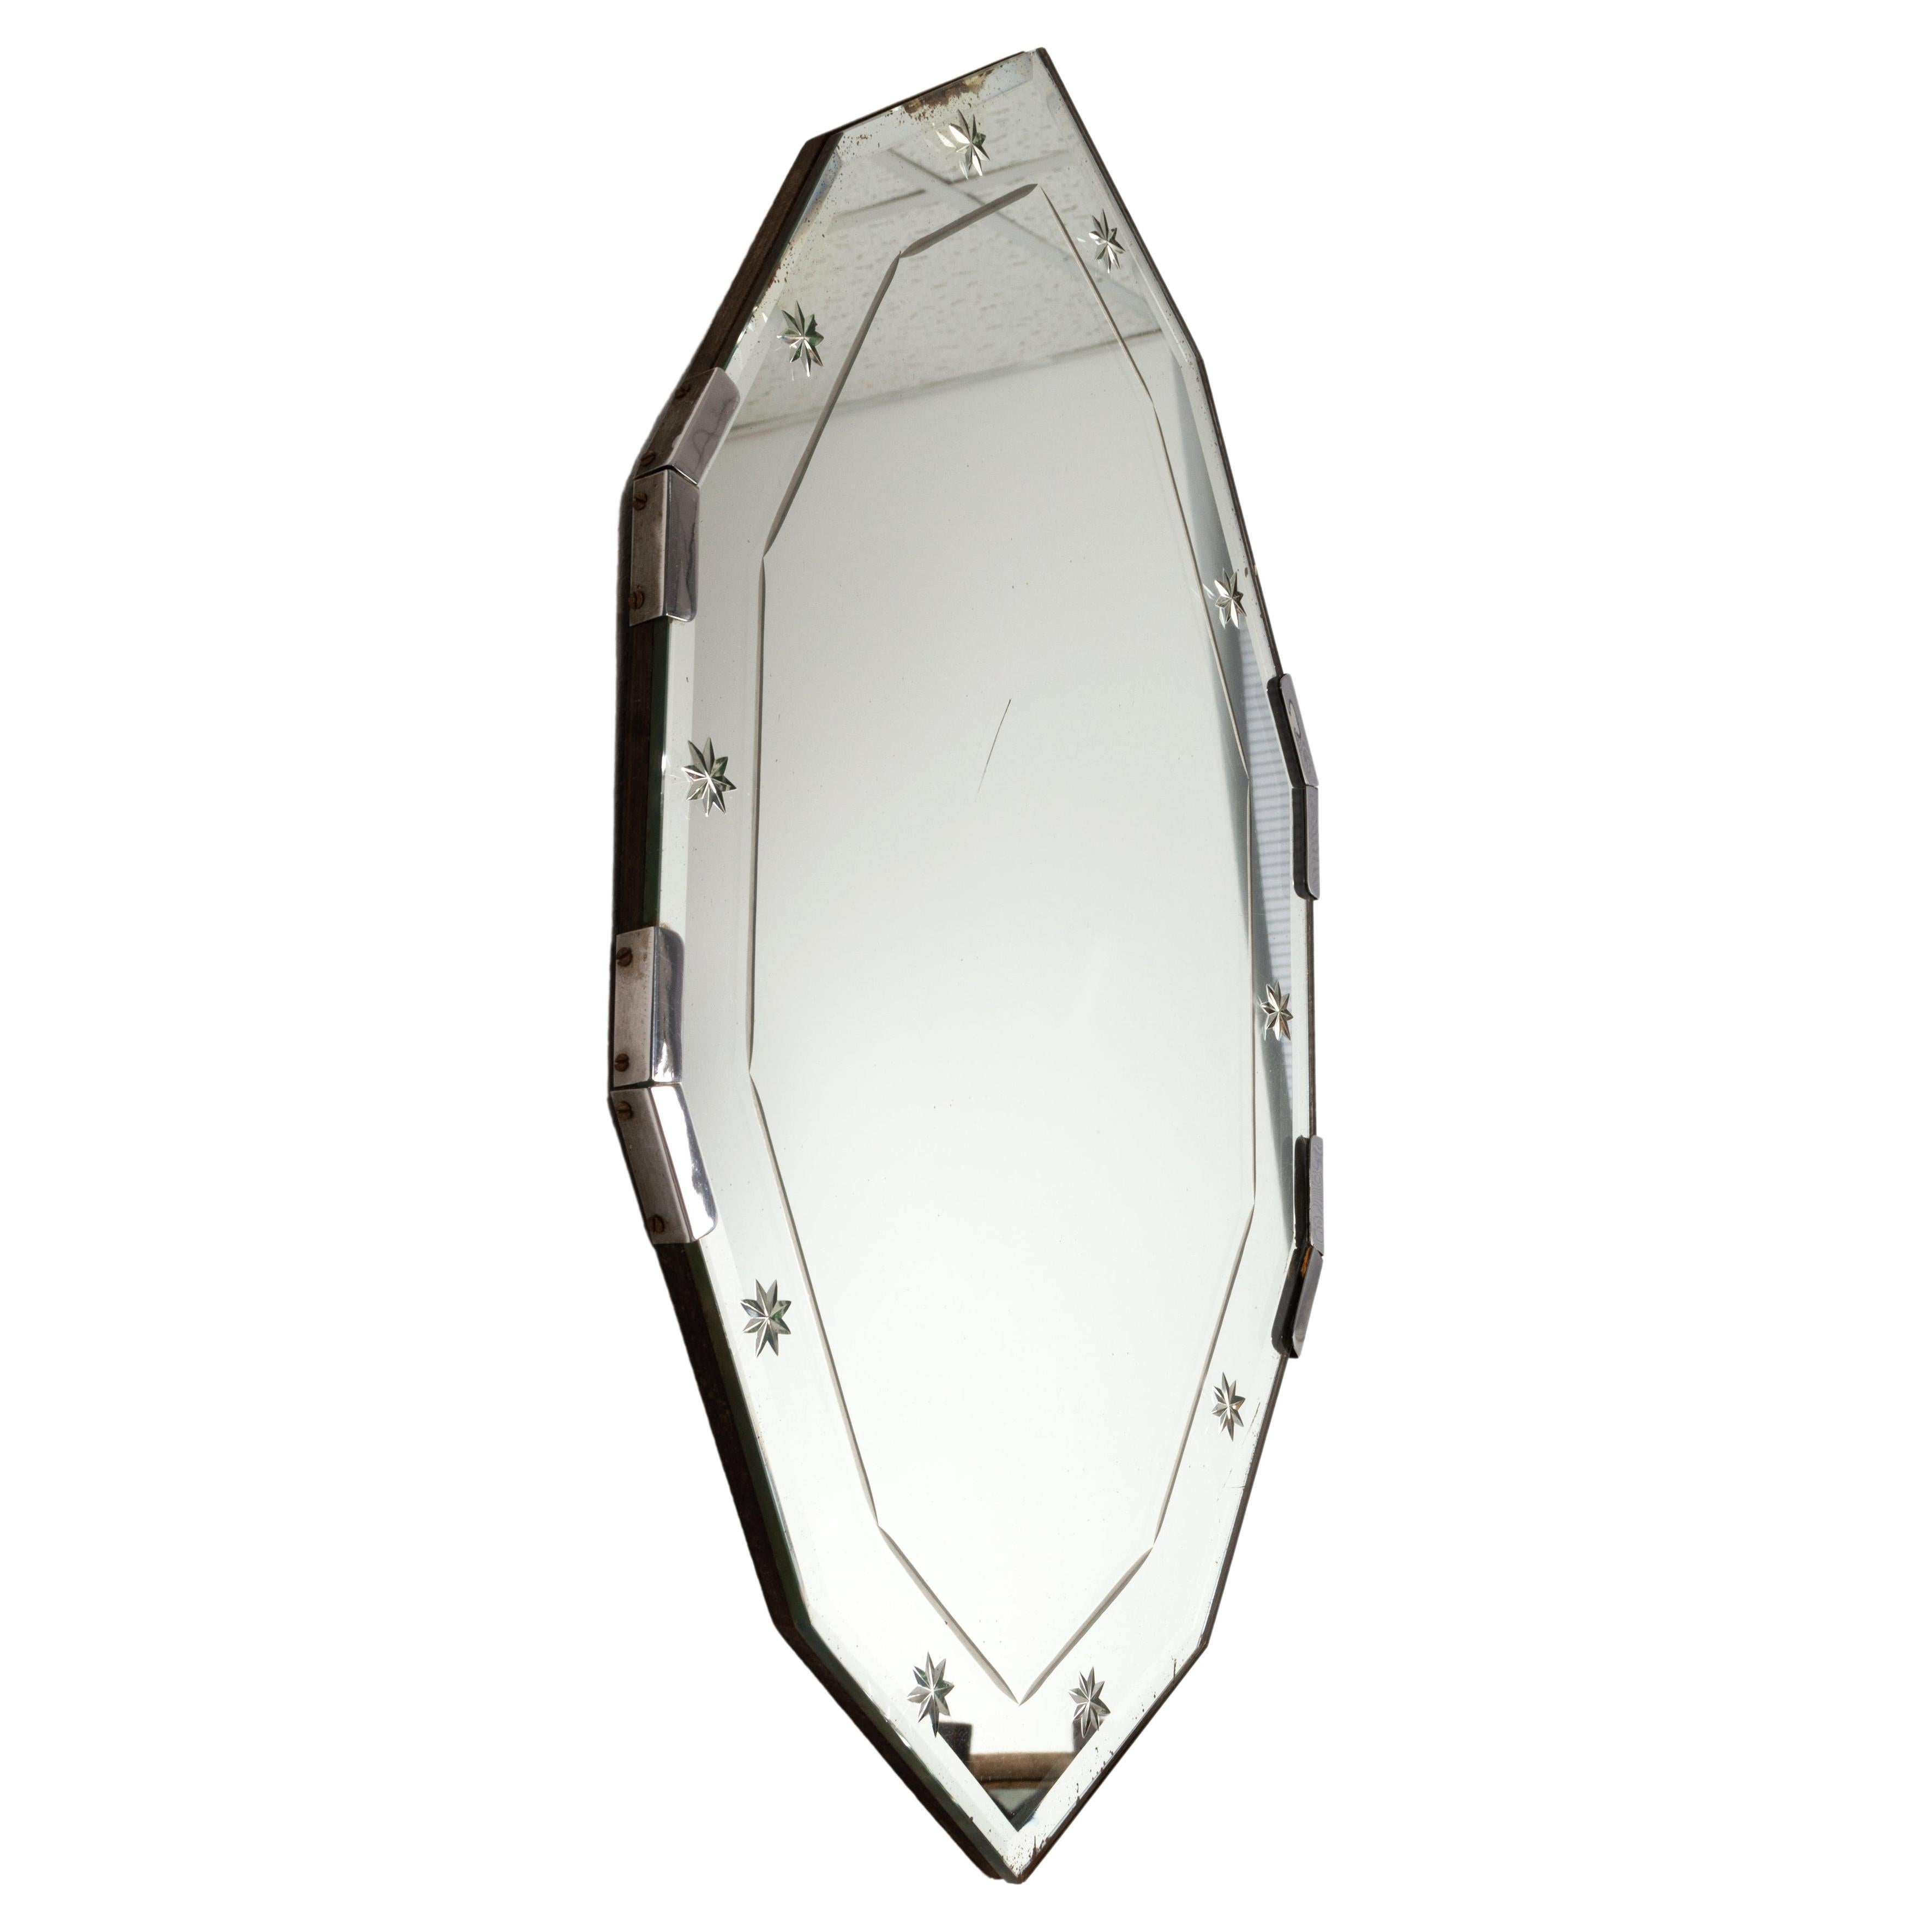 Miroir Art Déco français en verre gravé et étoilé C.1930

Un miroir charmant, d'une forme inhabituelle.

En très bon état, avec de très légères traces de rouille sur le verre de mercure d'origine (autour des bords et une petite ligne au centre),